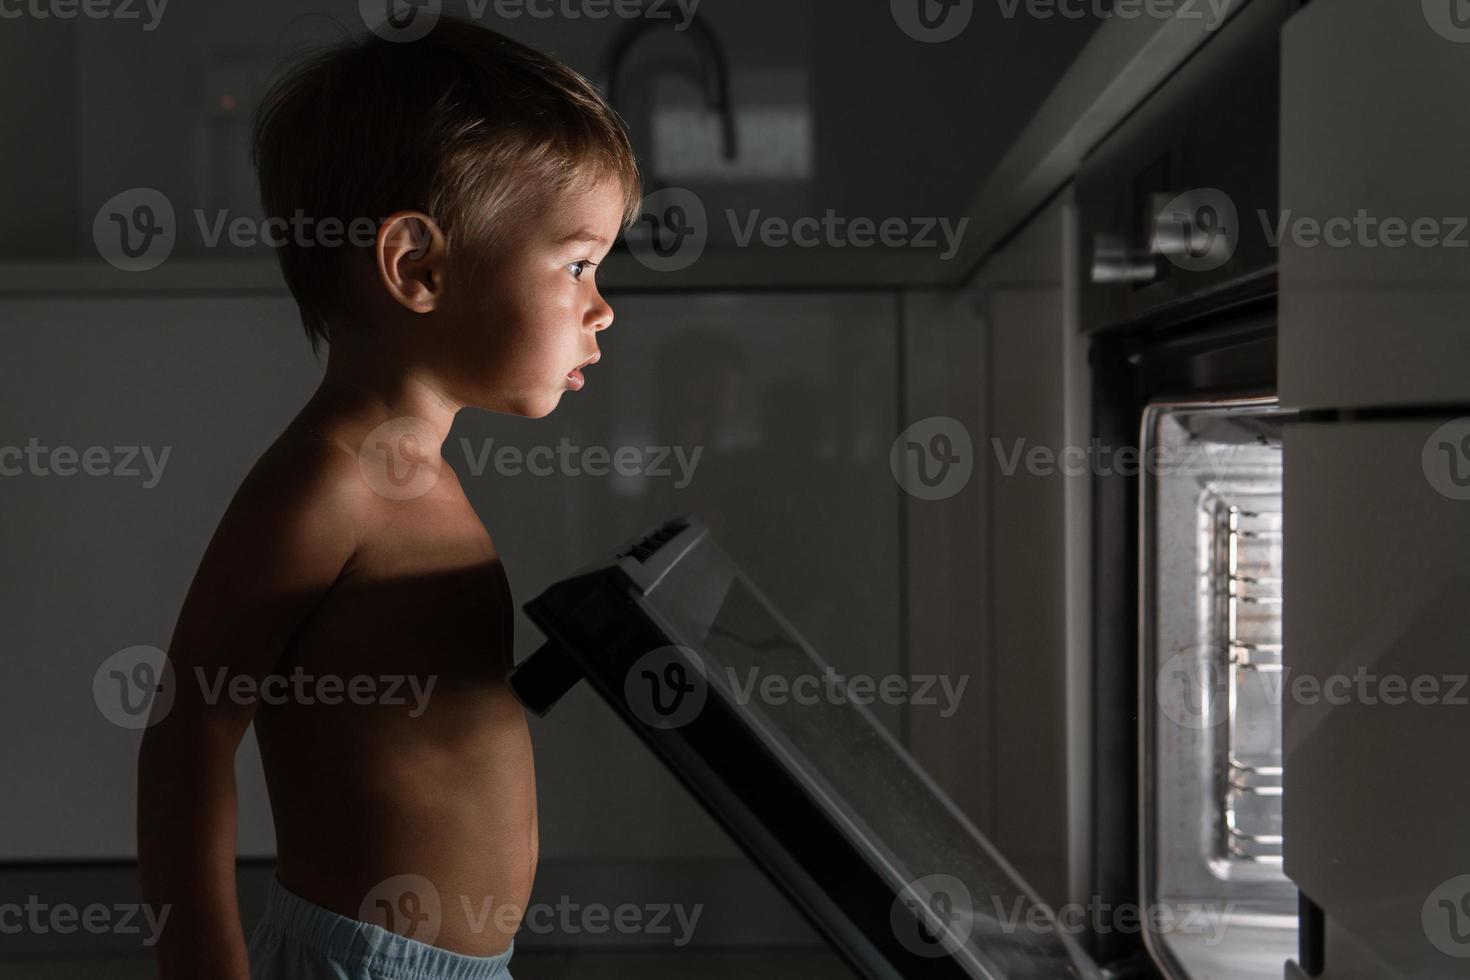 nieuwsgierig baby jongen opent de heet oven. concept van veiligheid en mogelijk problemen met onbeheerd kinderen. foto